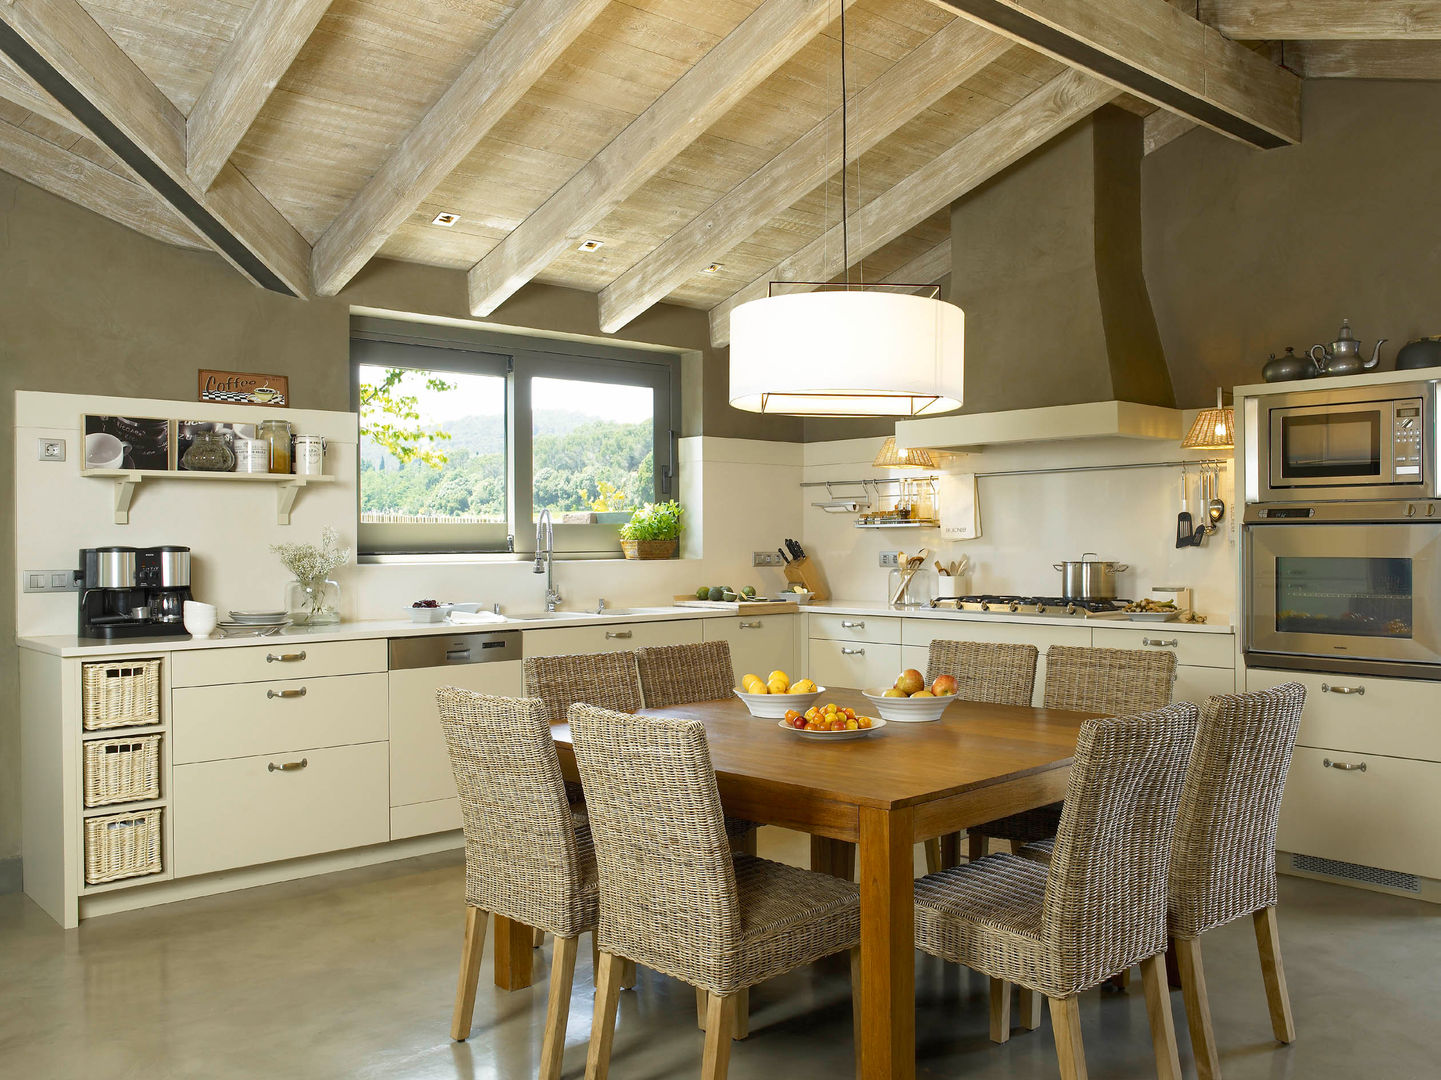 Tres espacios en uno: cocina, lavadero y planchador, DEULONDER arquitectura domestica DEULONDER arquitectura domestica Rustic style kitchen